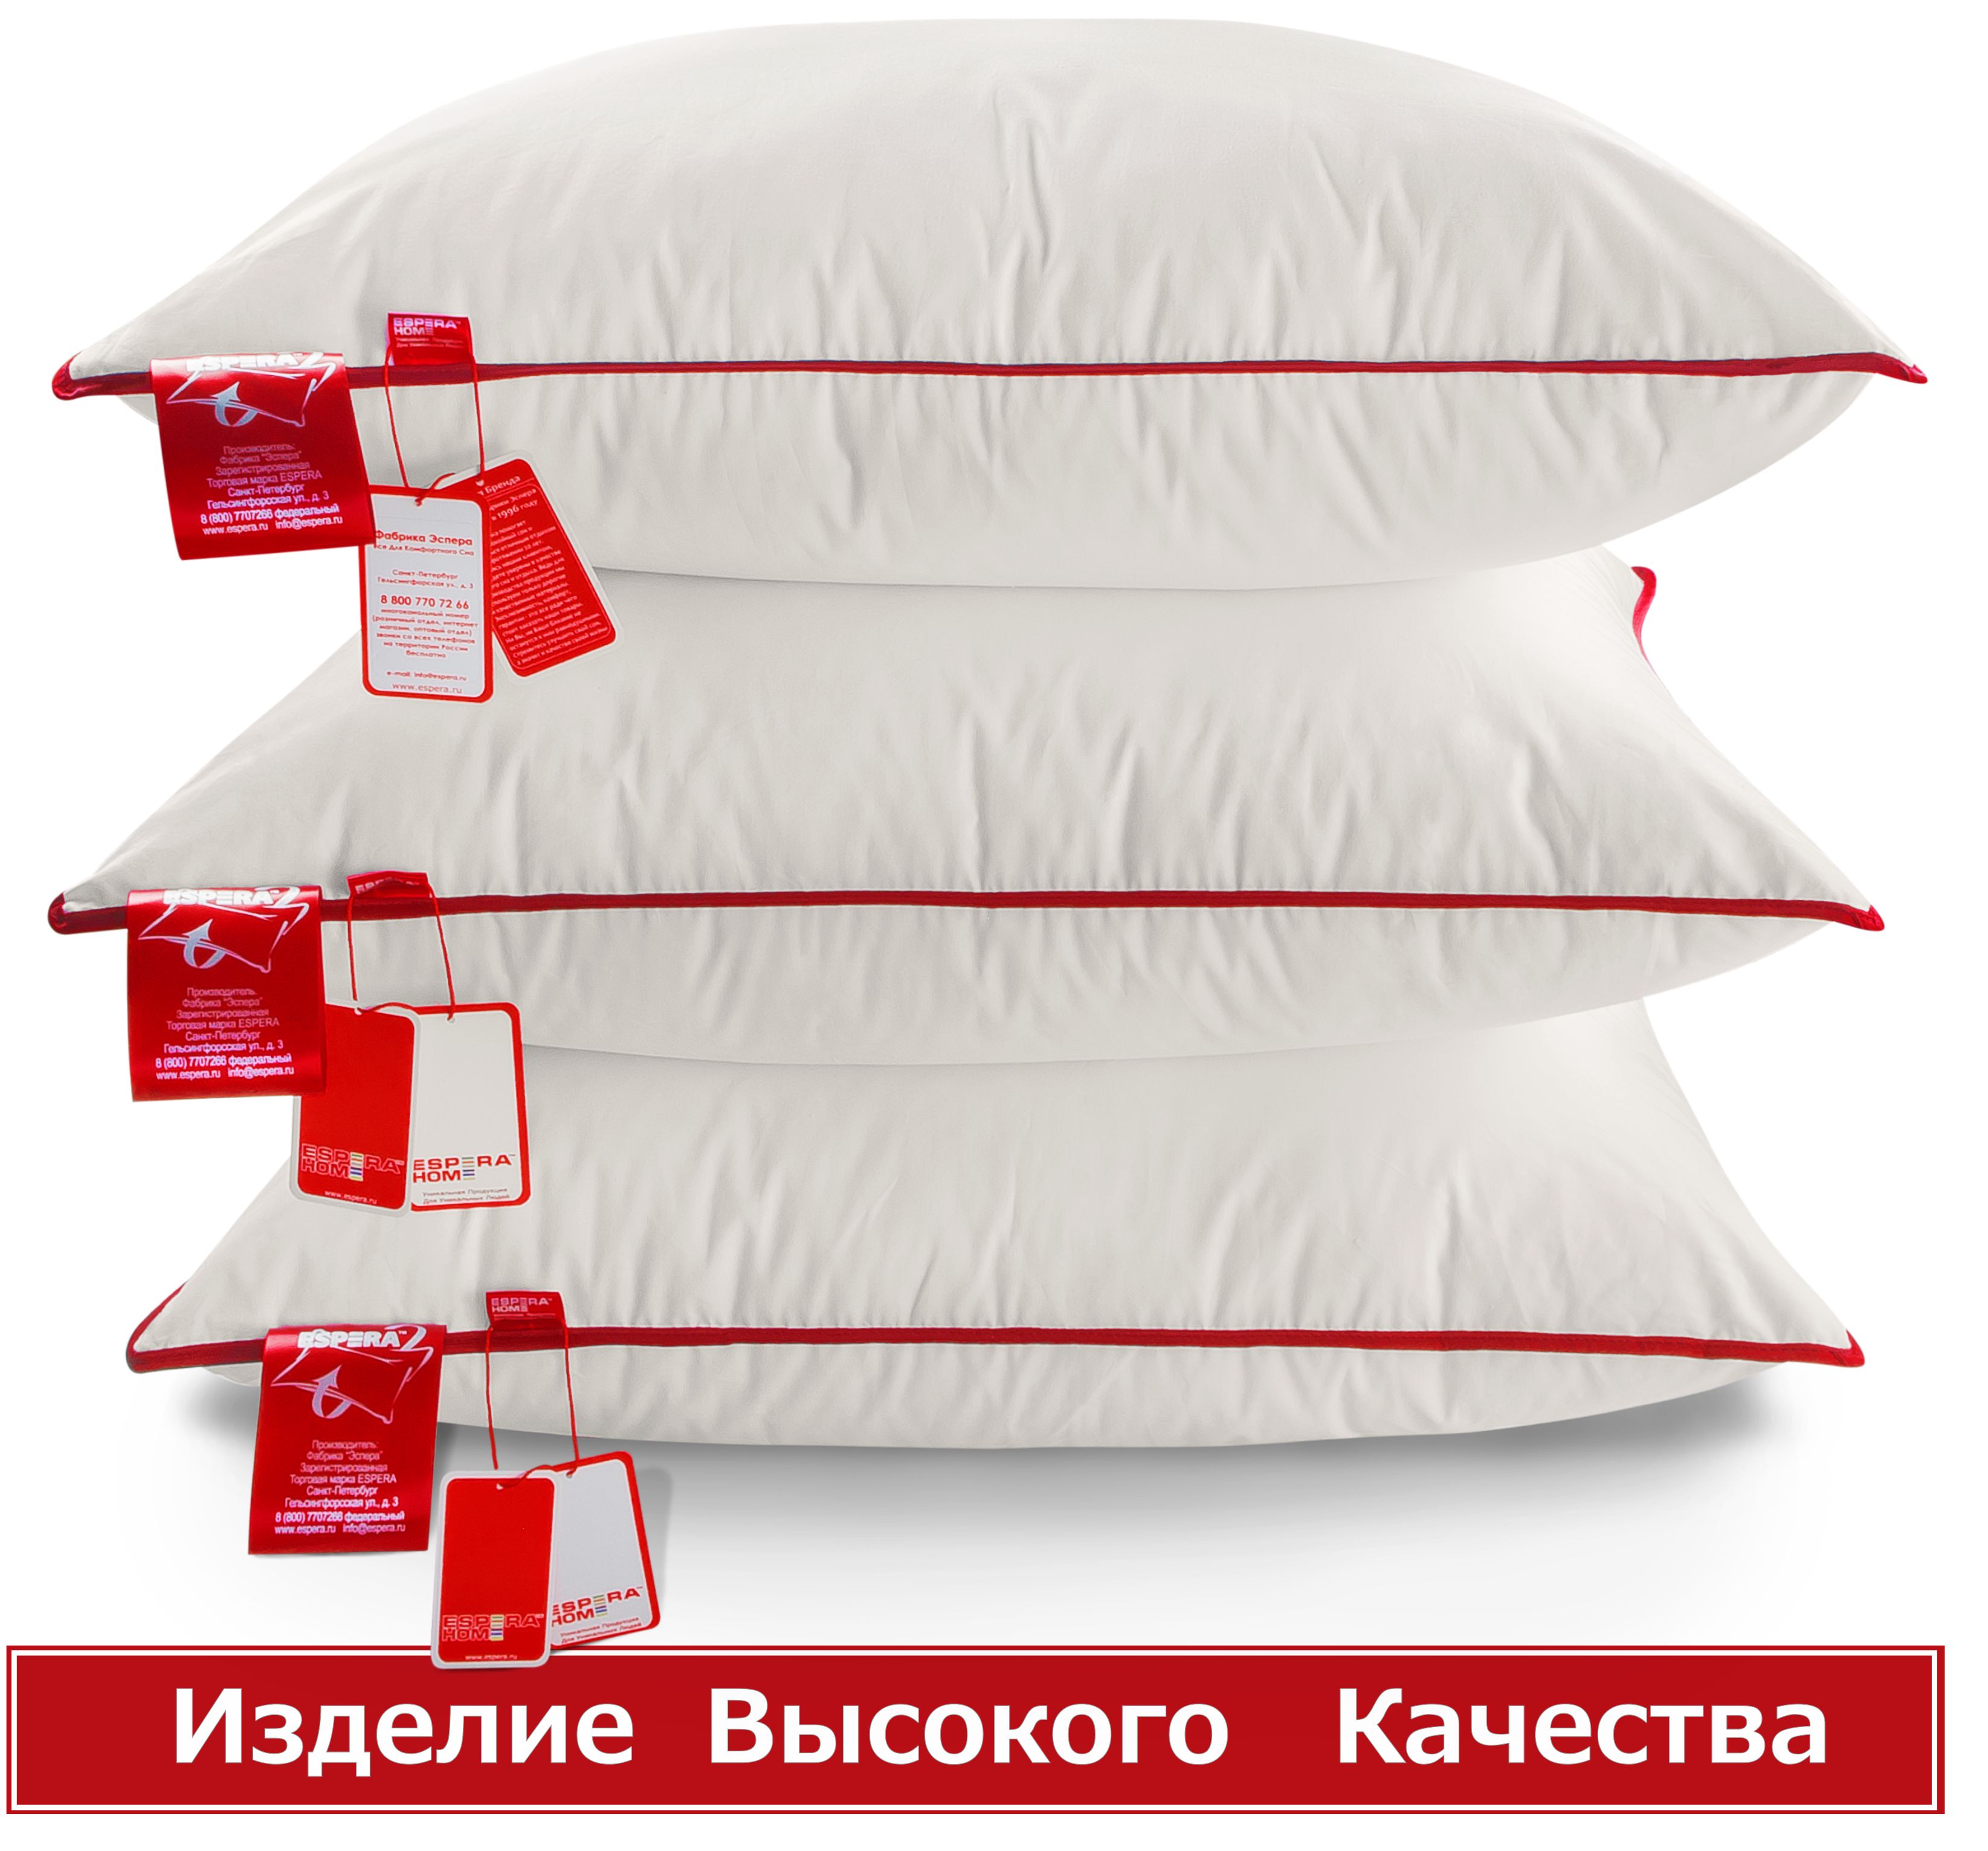 Купить подушку «Espera Comfort» 70см х 70см от Фабрика Эспера со скидкой